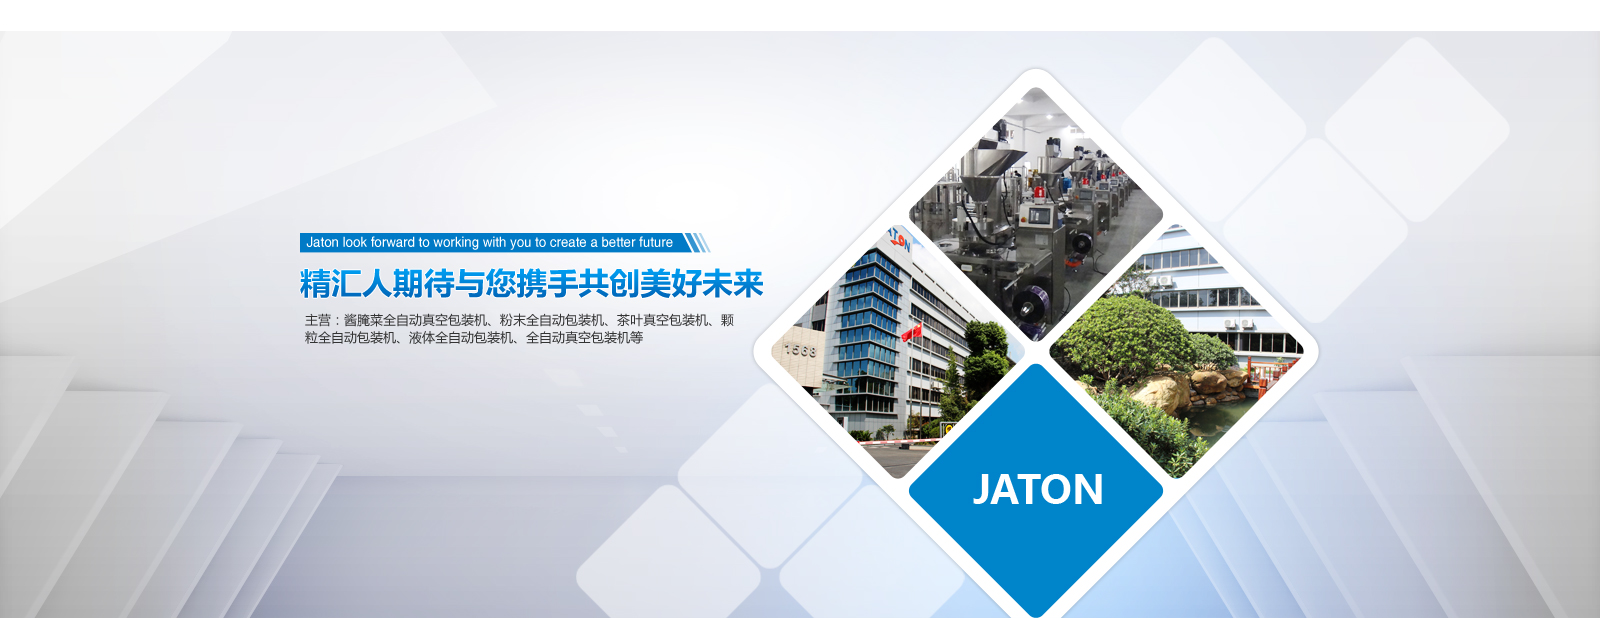 东莞市大显自动化仪器设备有限公司业务部